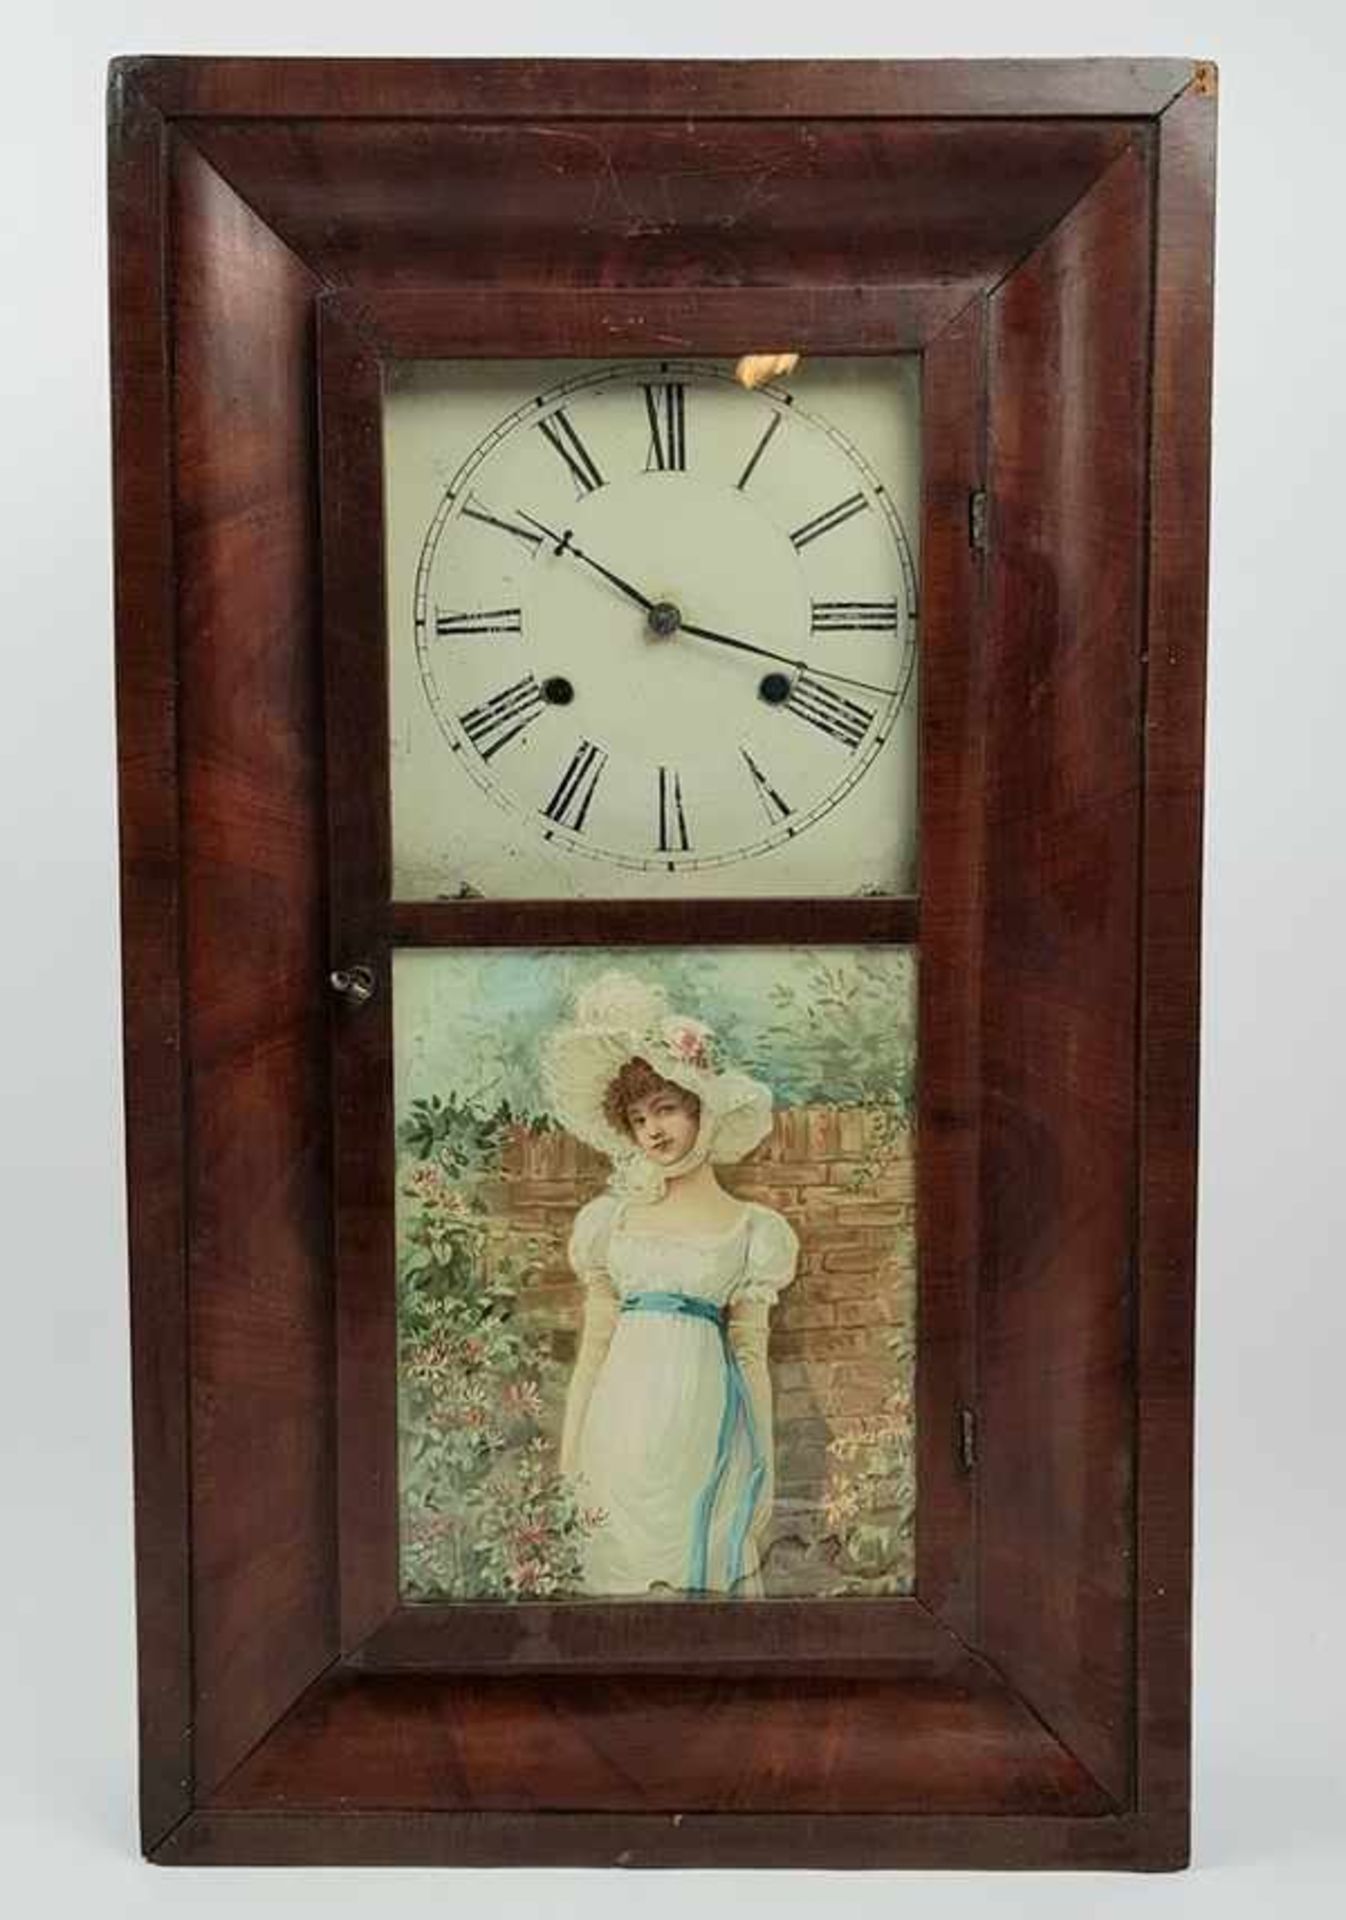 (Antiek) Klok regulateurBrass Clocks regulateur met romantisch tafereel achter glas. Circa 1900.